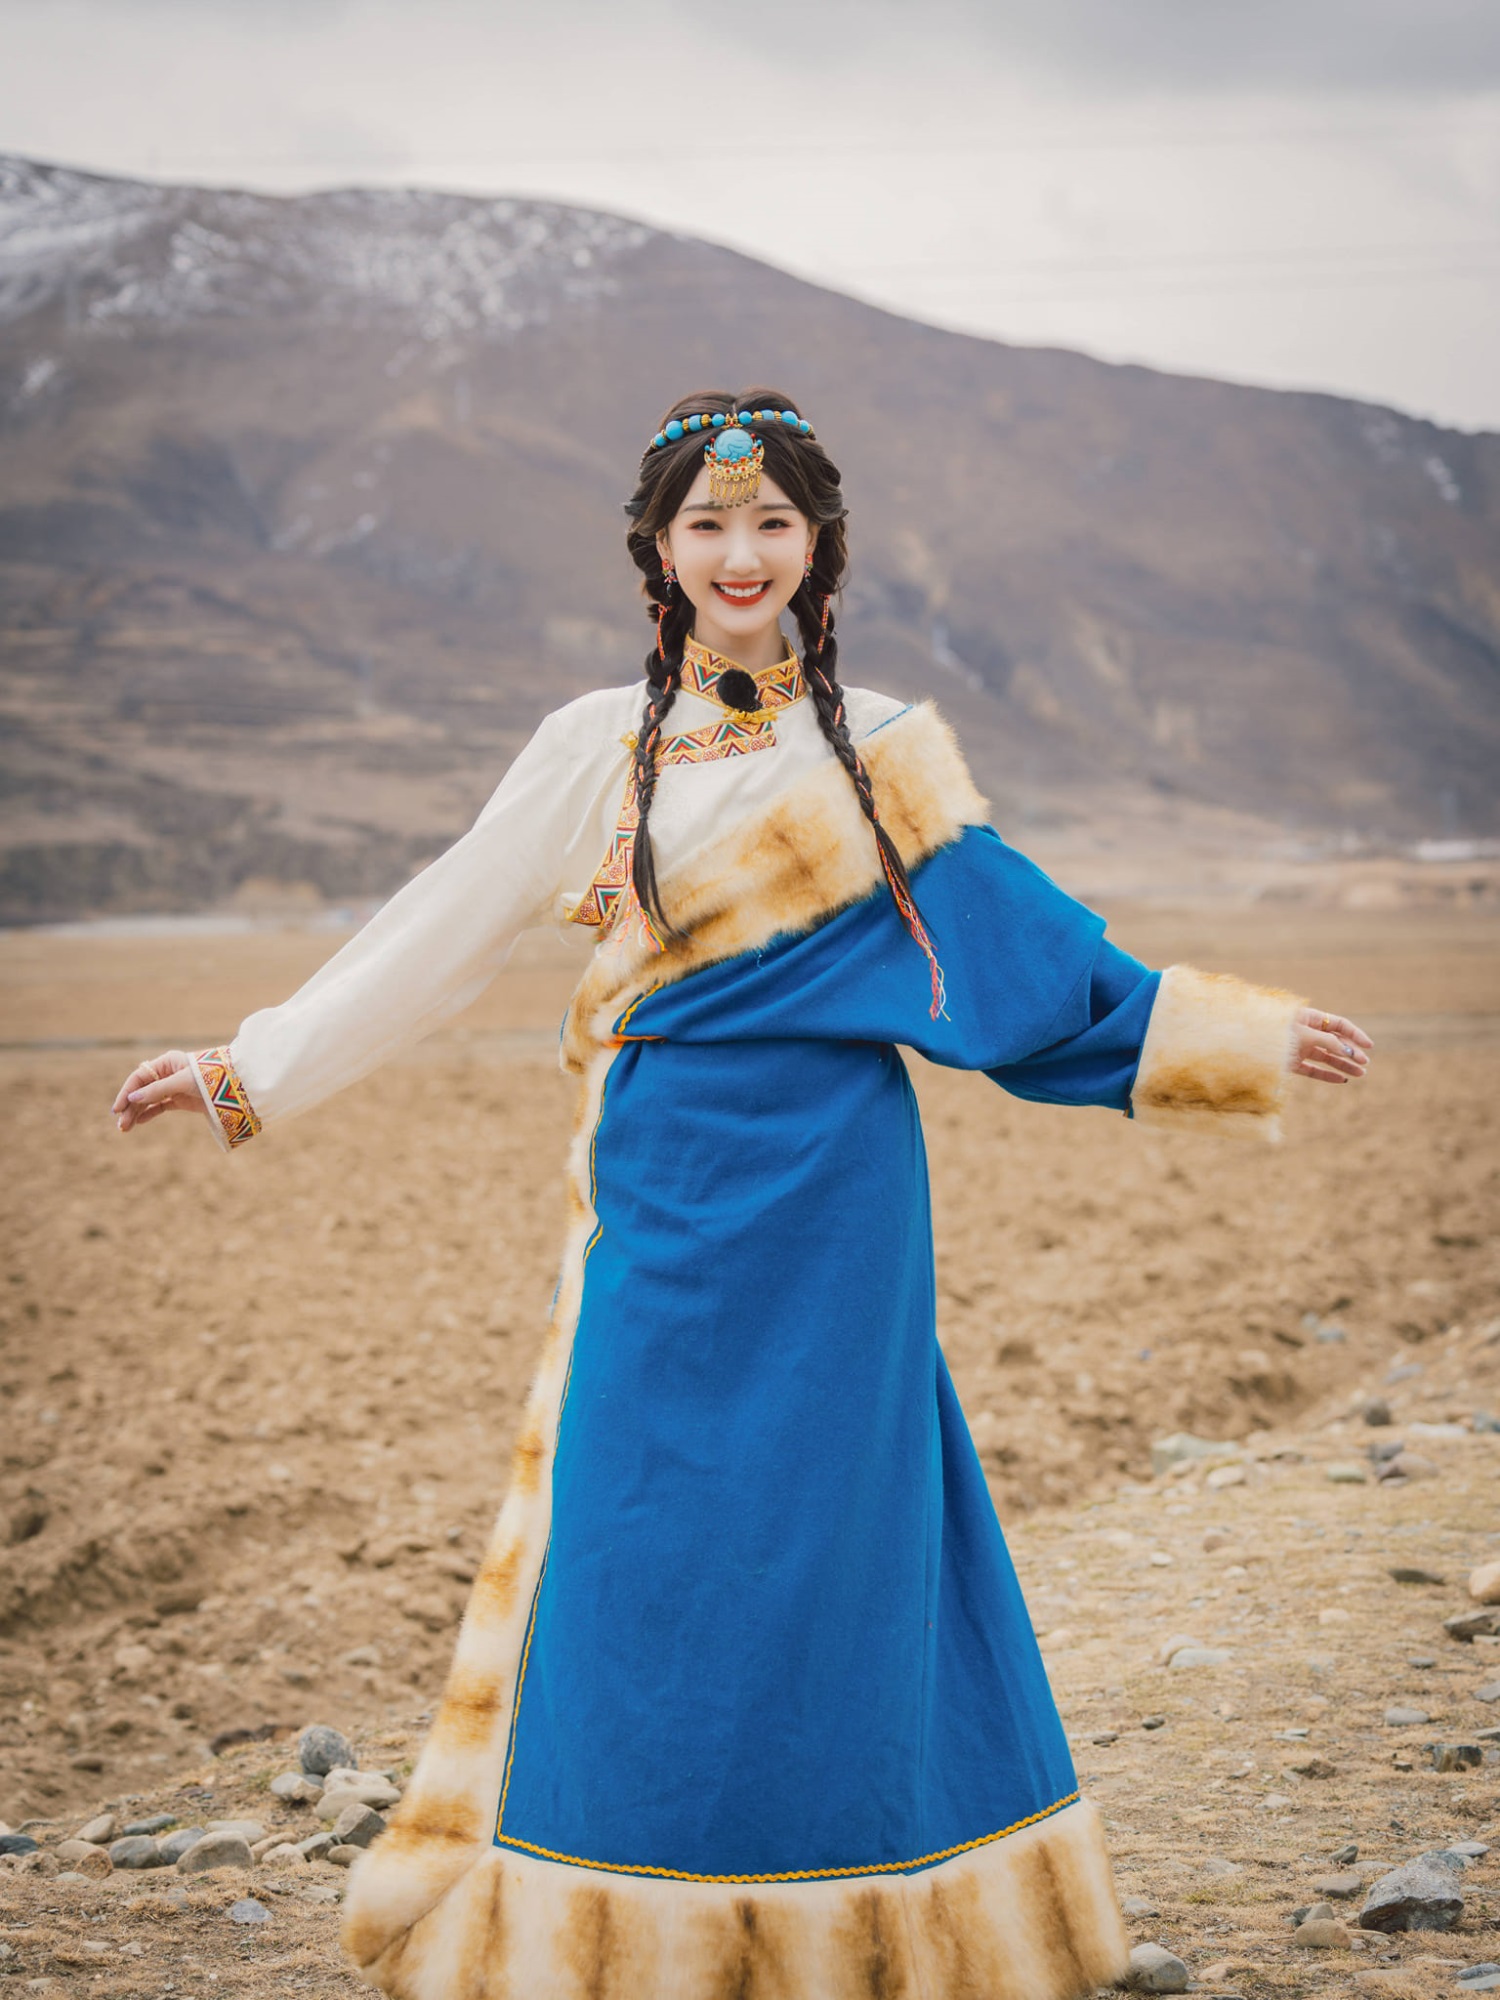 Mê mẩn trước nhan sắc ngọt ngào của Mao Hiểu Đồng khi hóa thân thành công chúa Tây Tạng - Ảnh 3